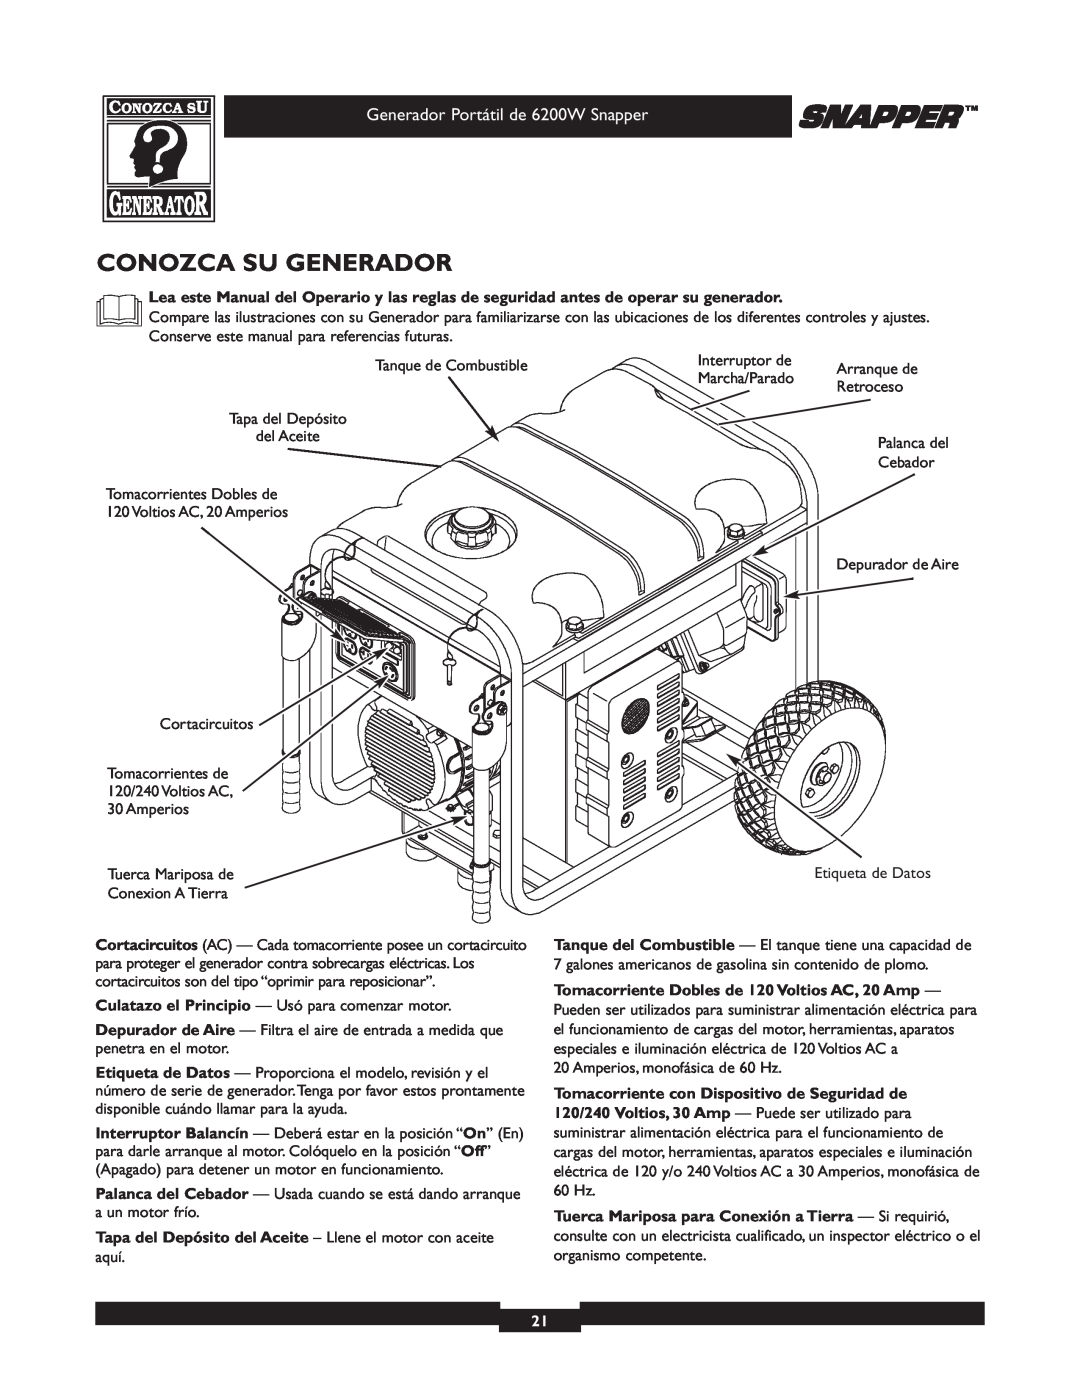 Snapper 30216 Conozca Su Generador, Generador Portátil de 6200W Snapper, Tomacorriente Dobles de 120 Voltios AC, 20 Amp 